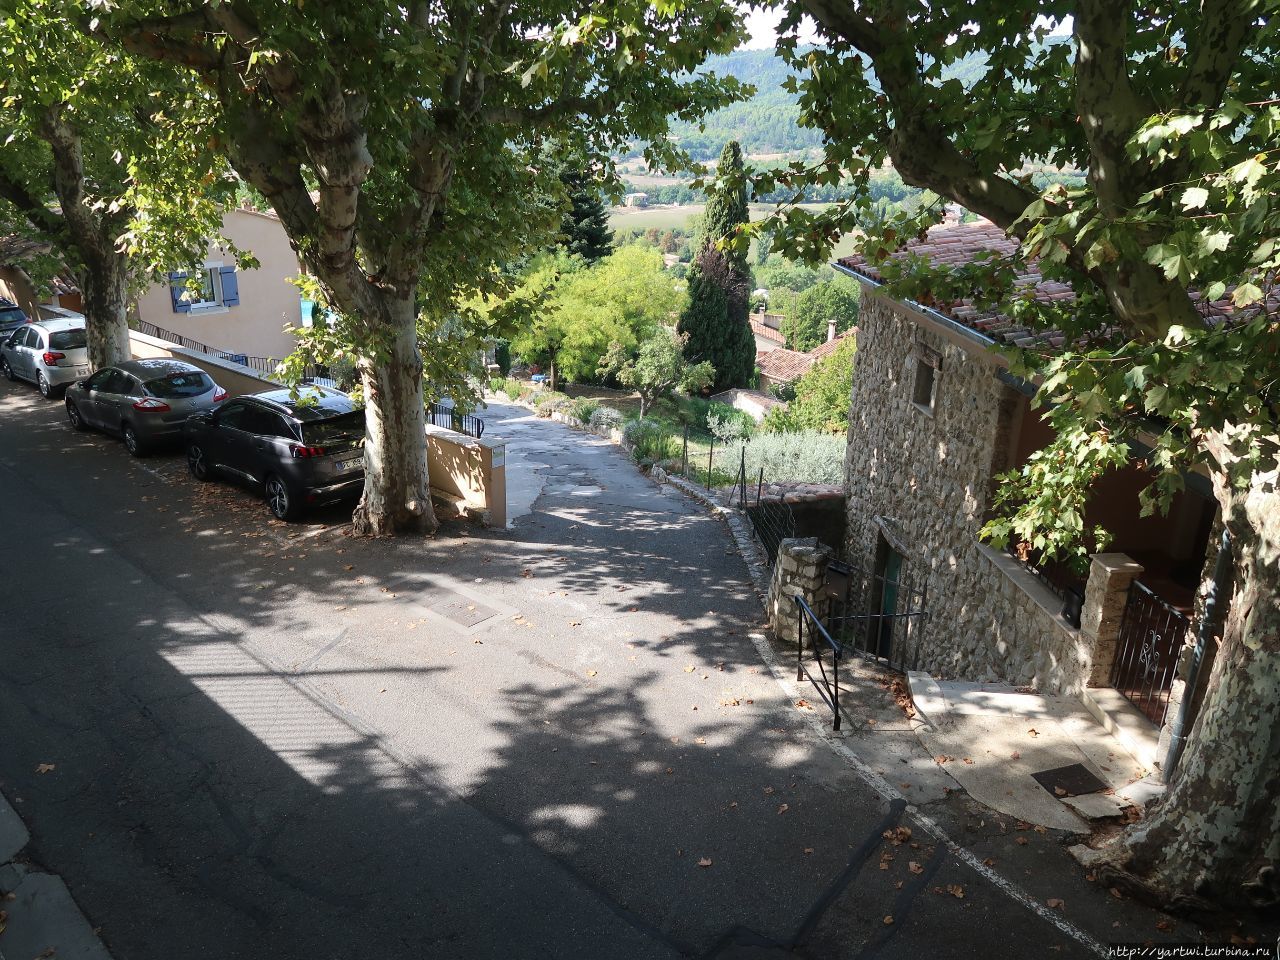 Деревня Moustiers-Sainte-Marie полностью пешеходная и расположена на скалистой террасе высотой около 100 метров. Мустье-Сент-Мари, Франция